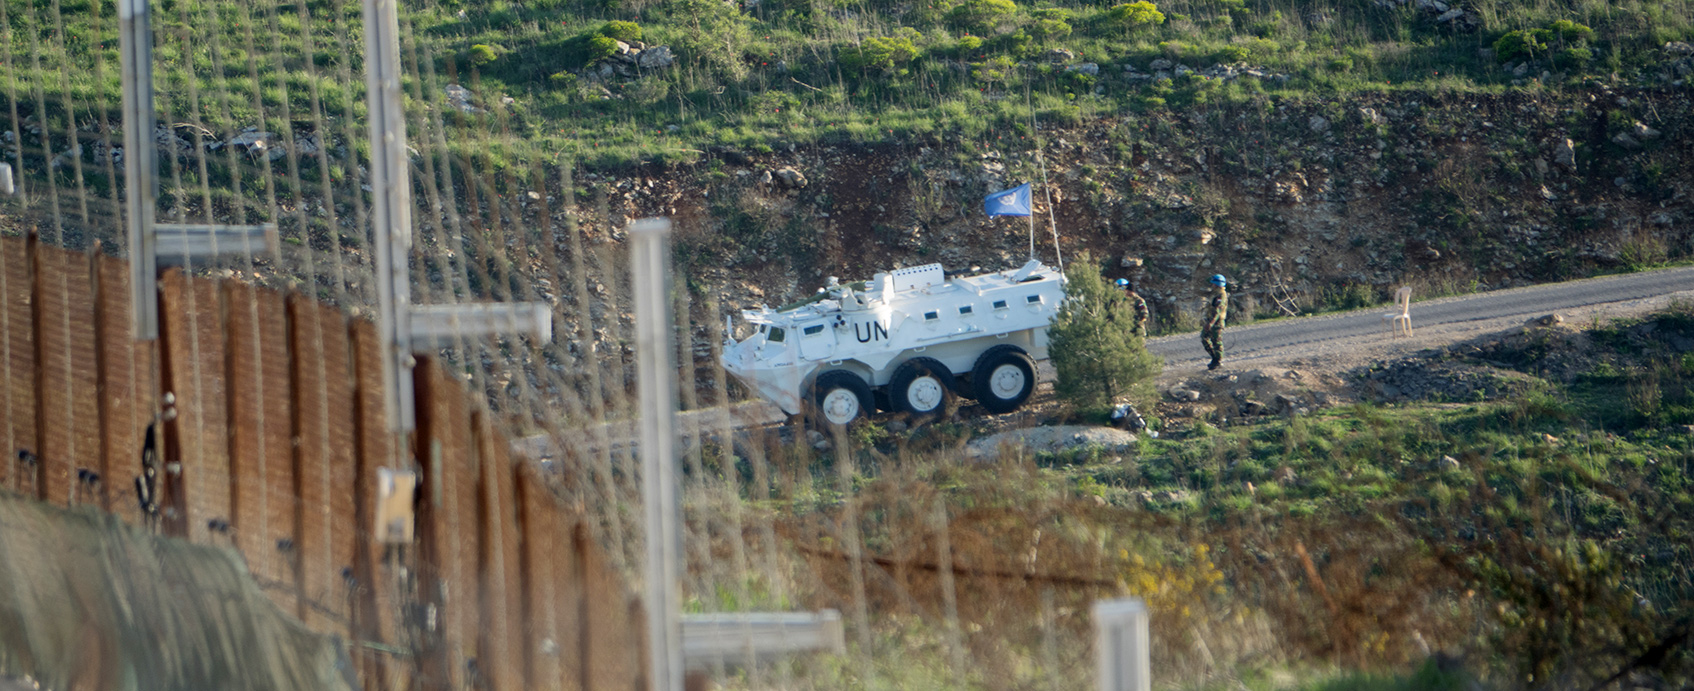 Auch an der Grenze zum Libanon sind UN-Einheiten stationiert.